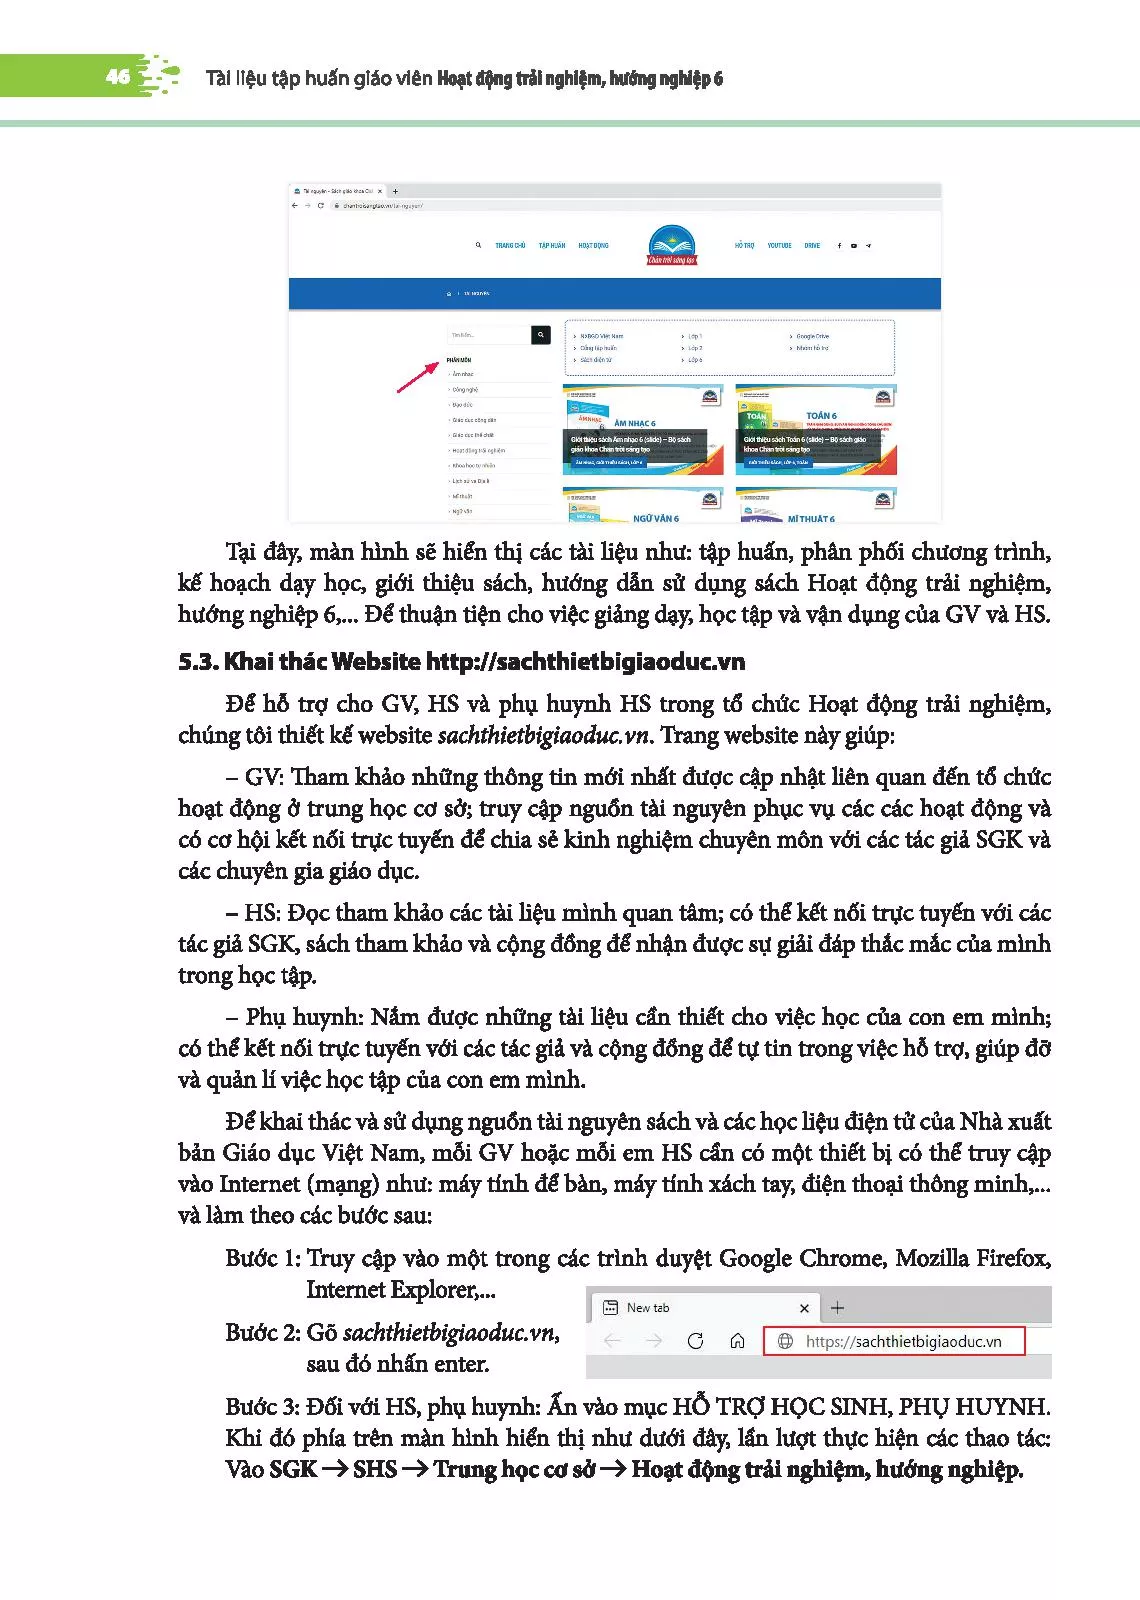 5. Hướng dẫn sử dụng nguồn tài nguyên sách và các học liệu điện tử của Nhà xuất bản Giáo dục Việt Nam. 